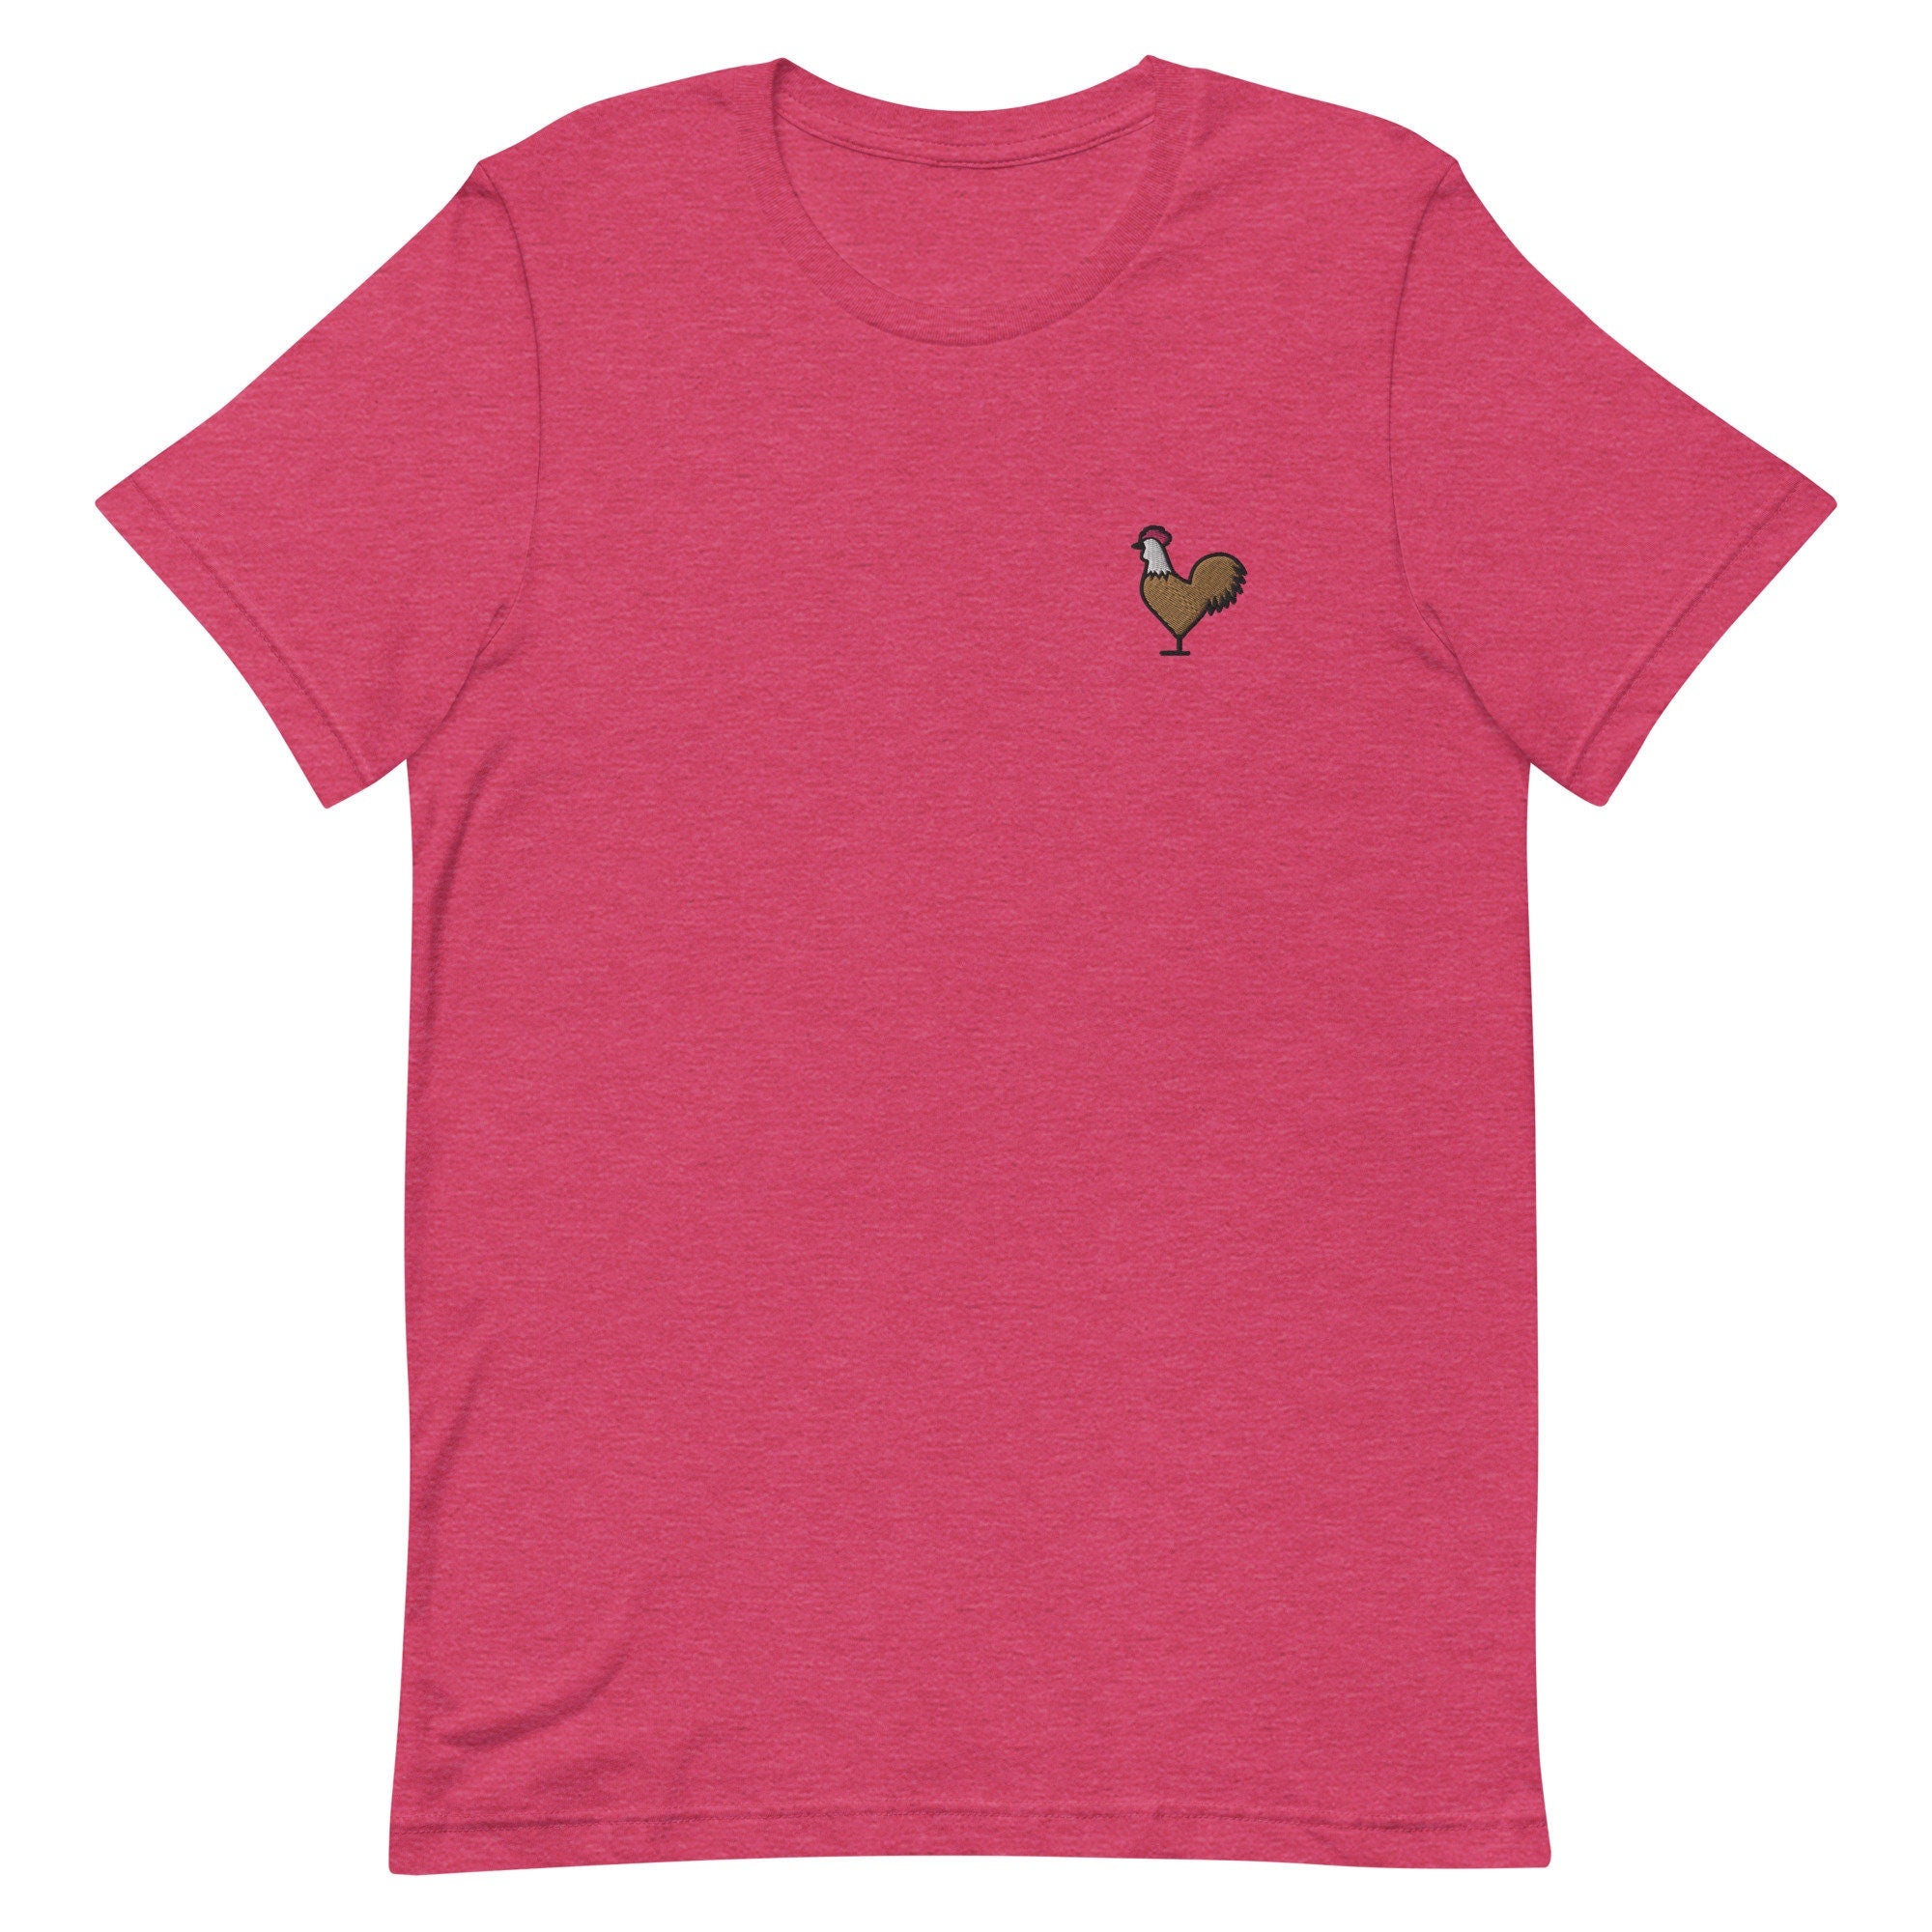 Rooster Premium Men's T-Shirt, Embroidered Men's T-Shirt Gift for Boyfriend, Men's Short Sleeve Shirt - Multiple Colors